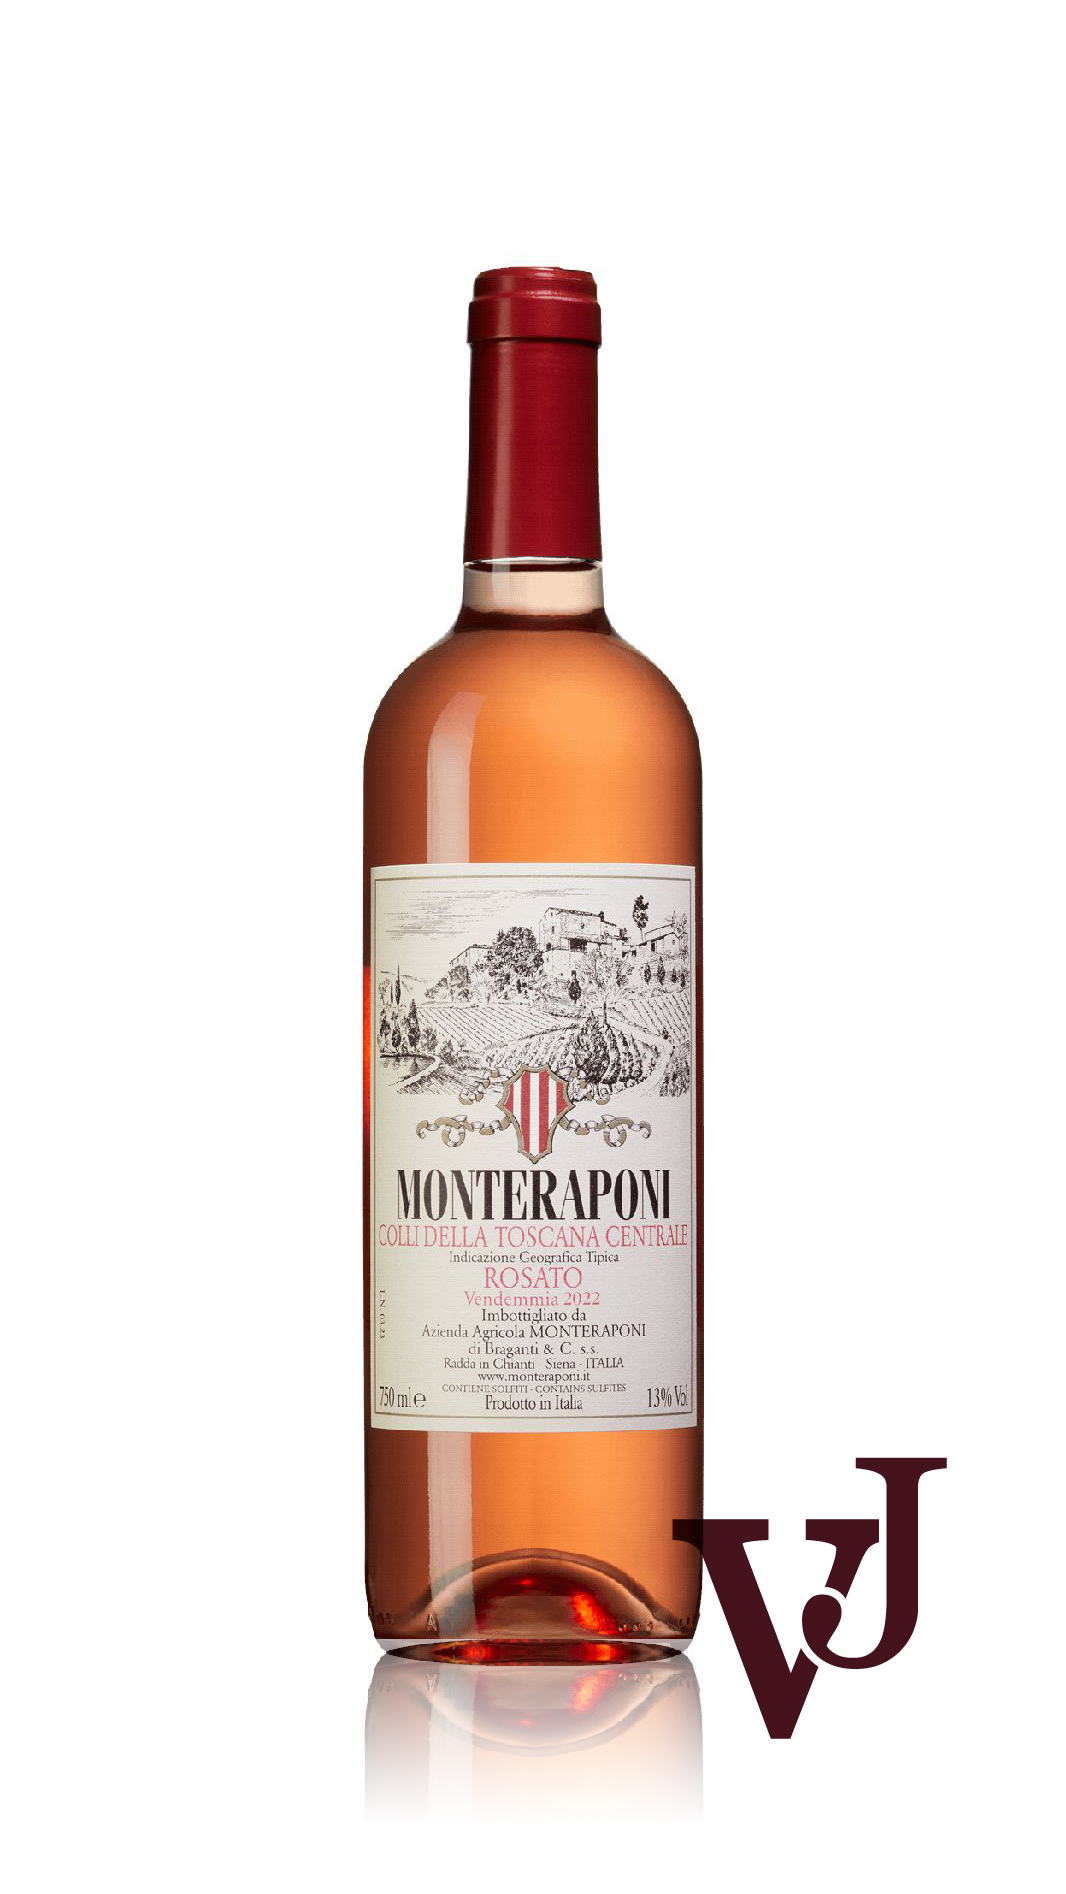 Rosé Vin - Monteraponi Rosato 2022 artikel nummer 9243201 från producenten Monteraponi från området Italien